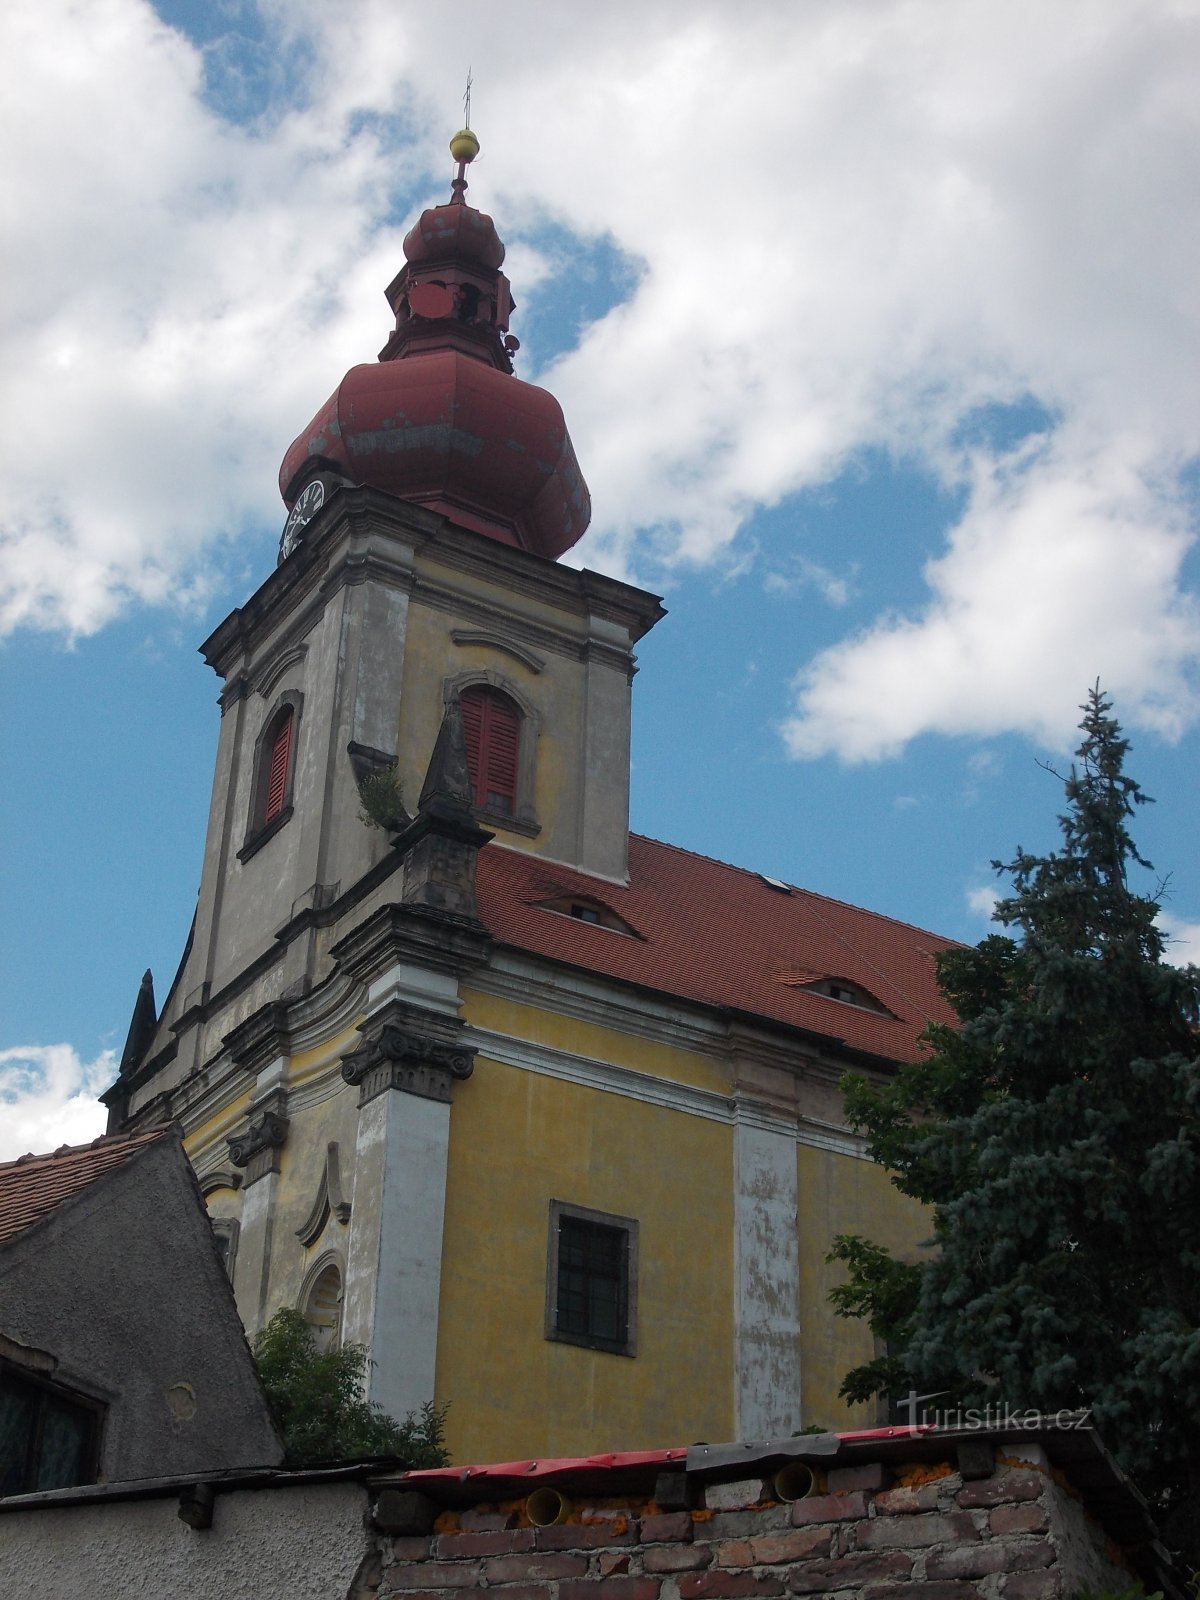 タマネギ形の塔が上にあるプリズム塔が組み込まれた教会